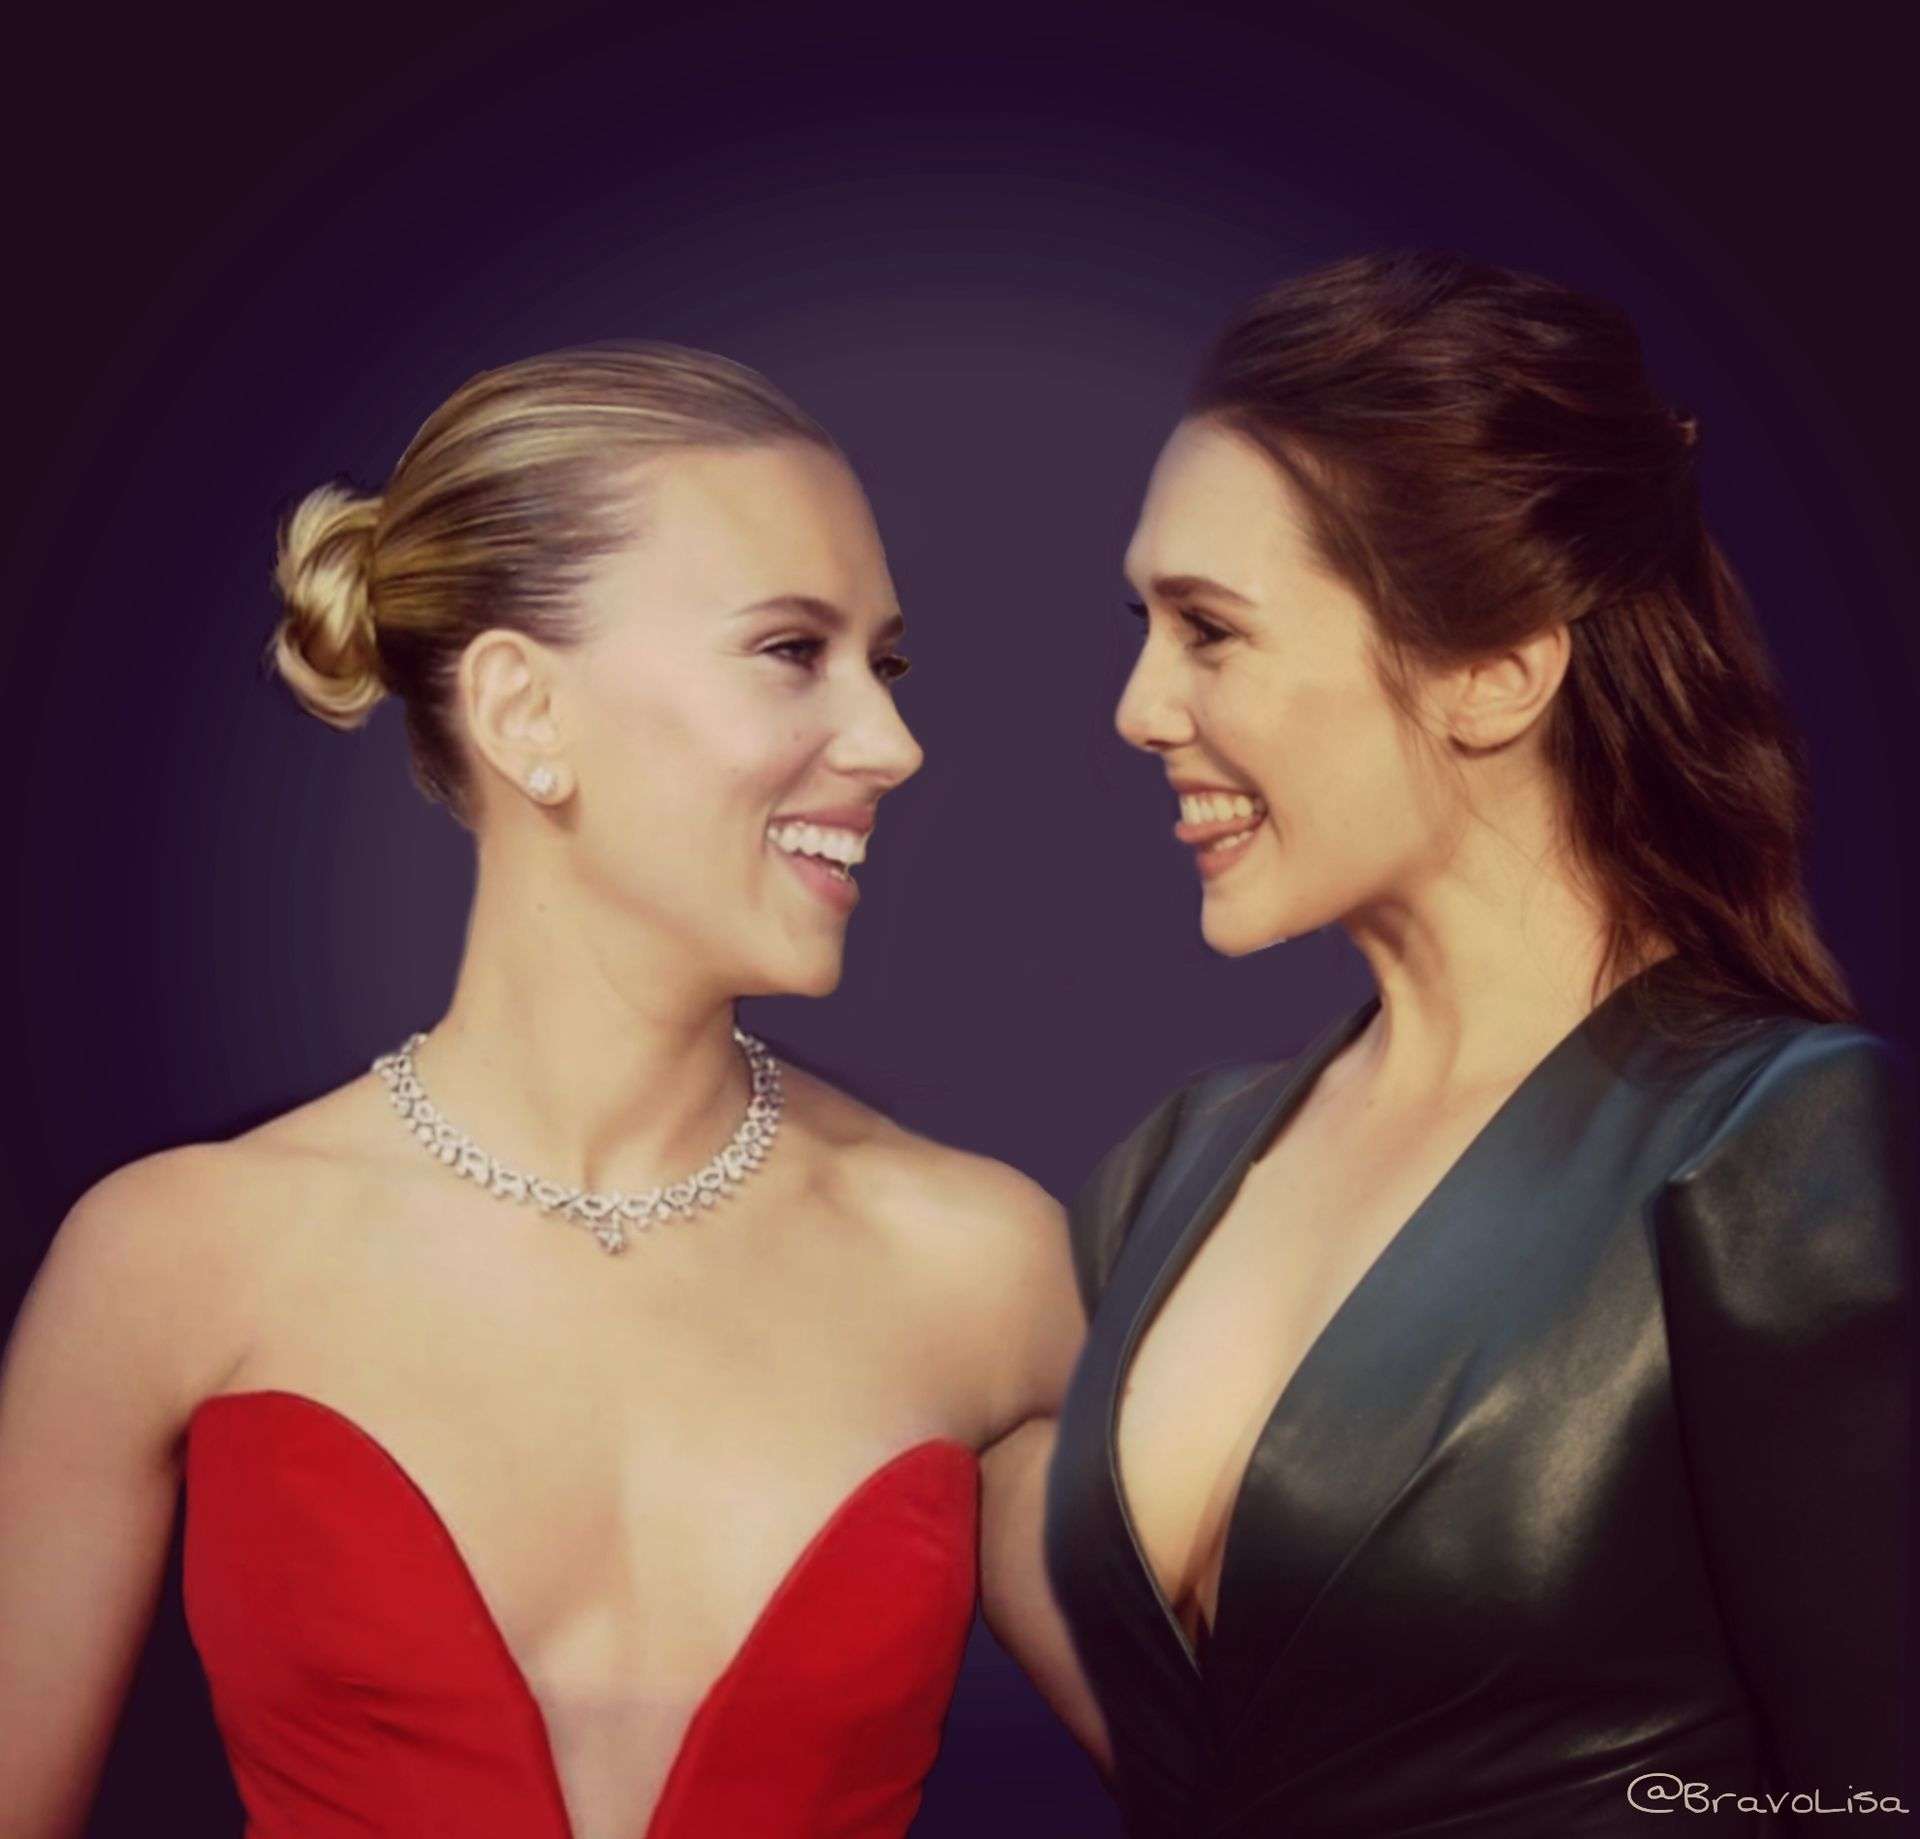 Elizabeth Olsen and Scarlett Johansson